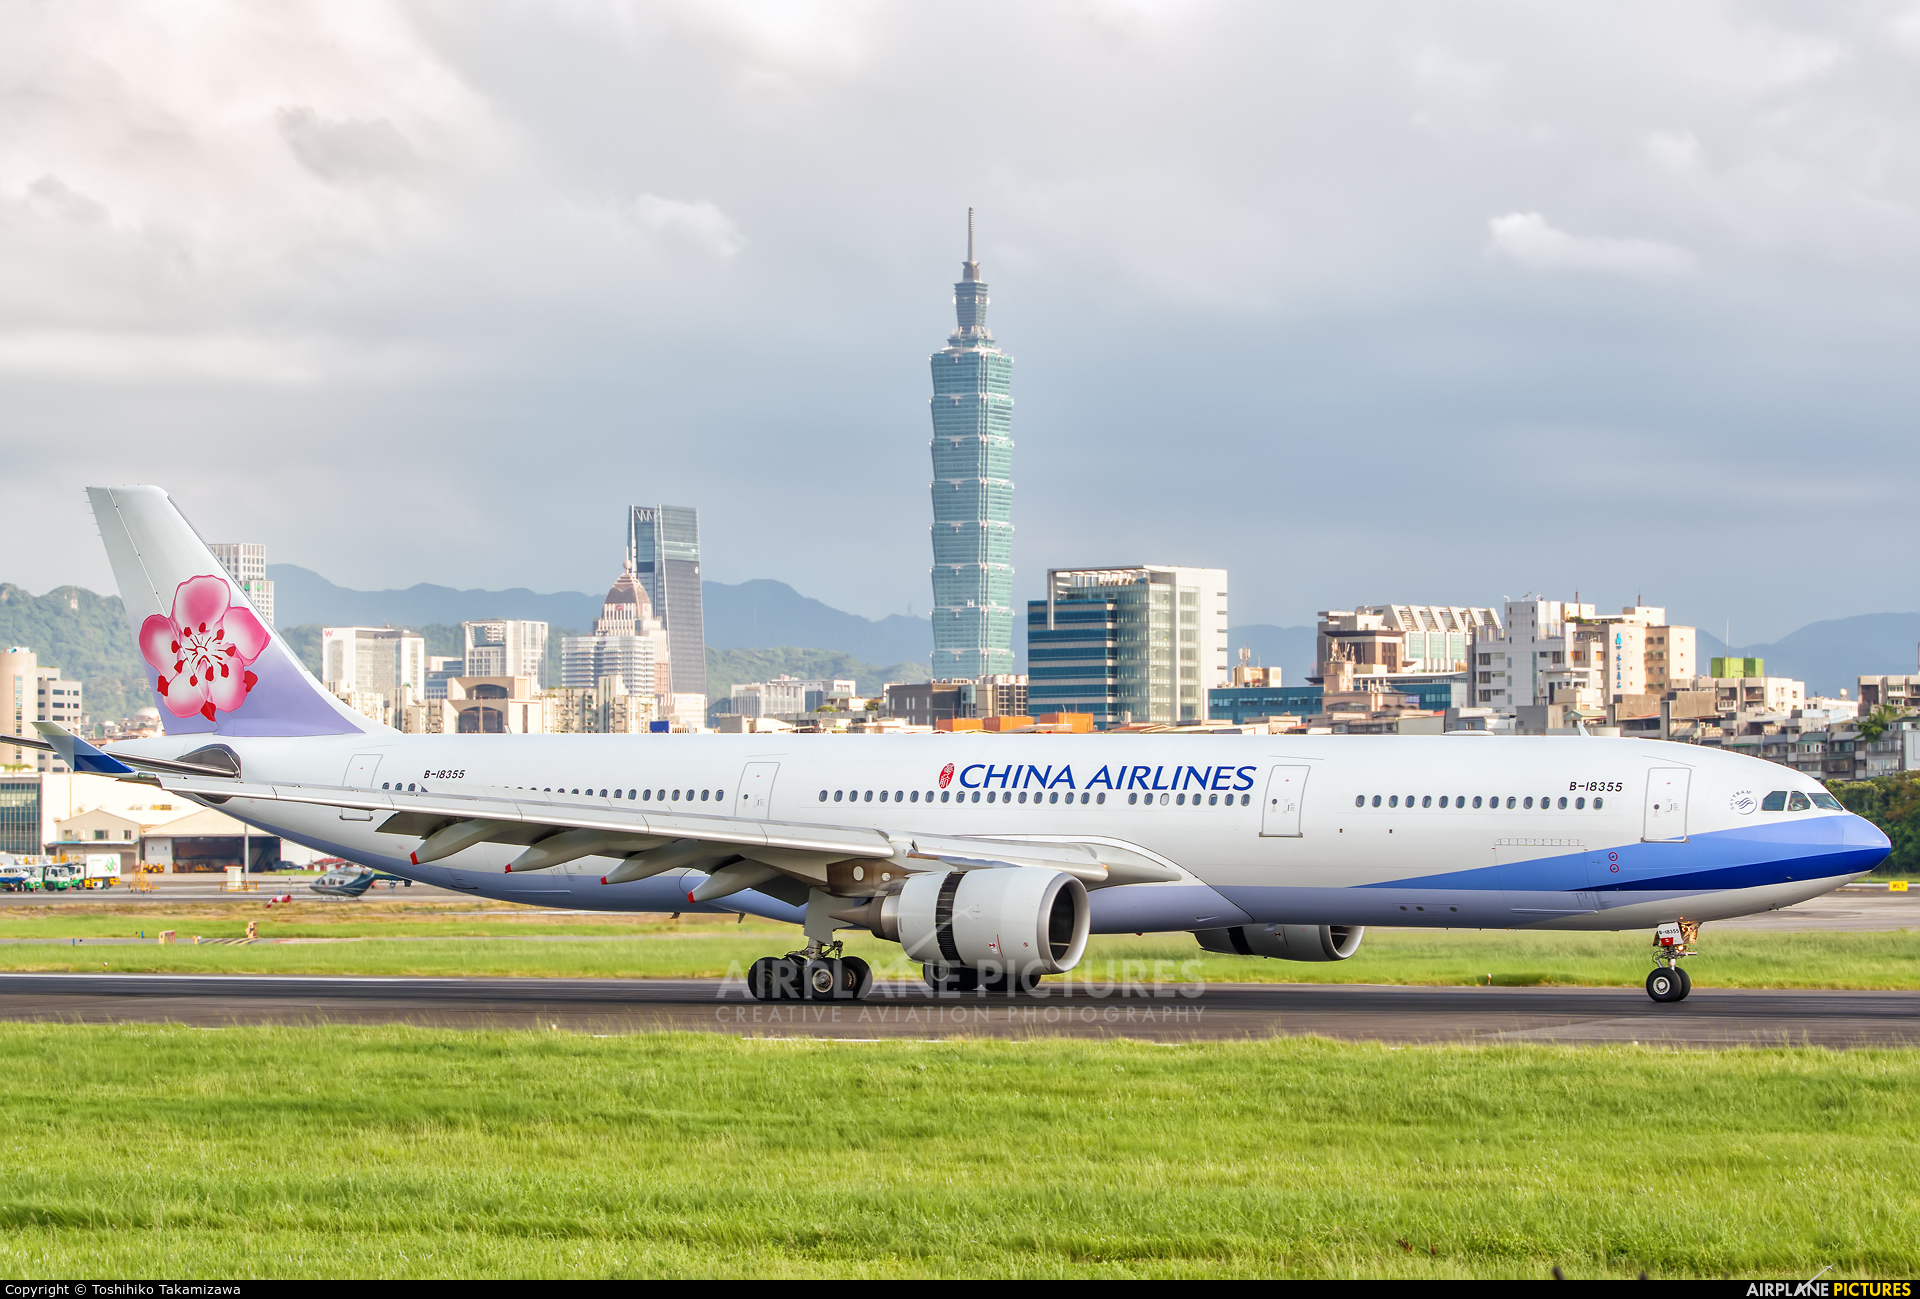 China Airlines B-18355 aircraft at Taipei Sung Shan/Songshan Airport